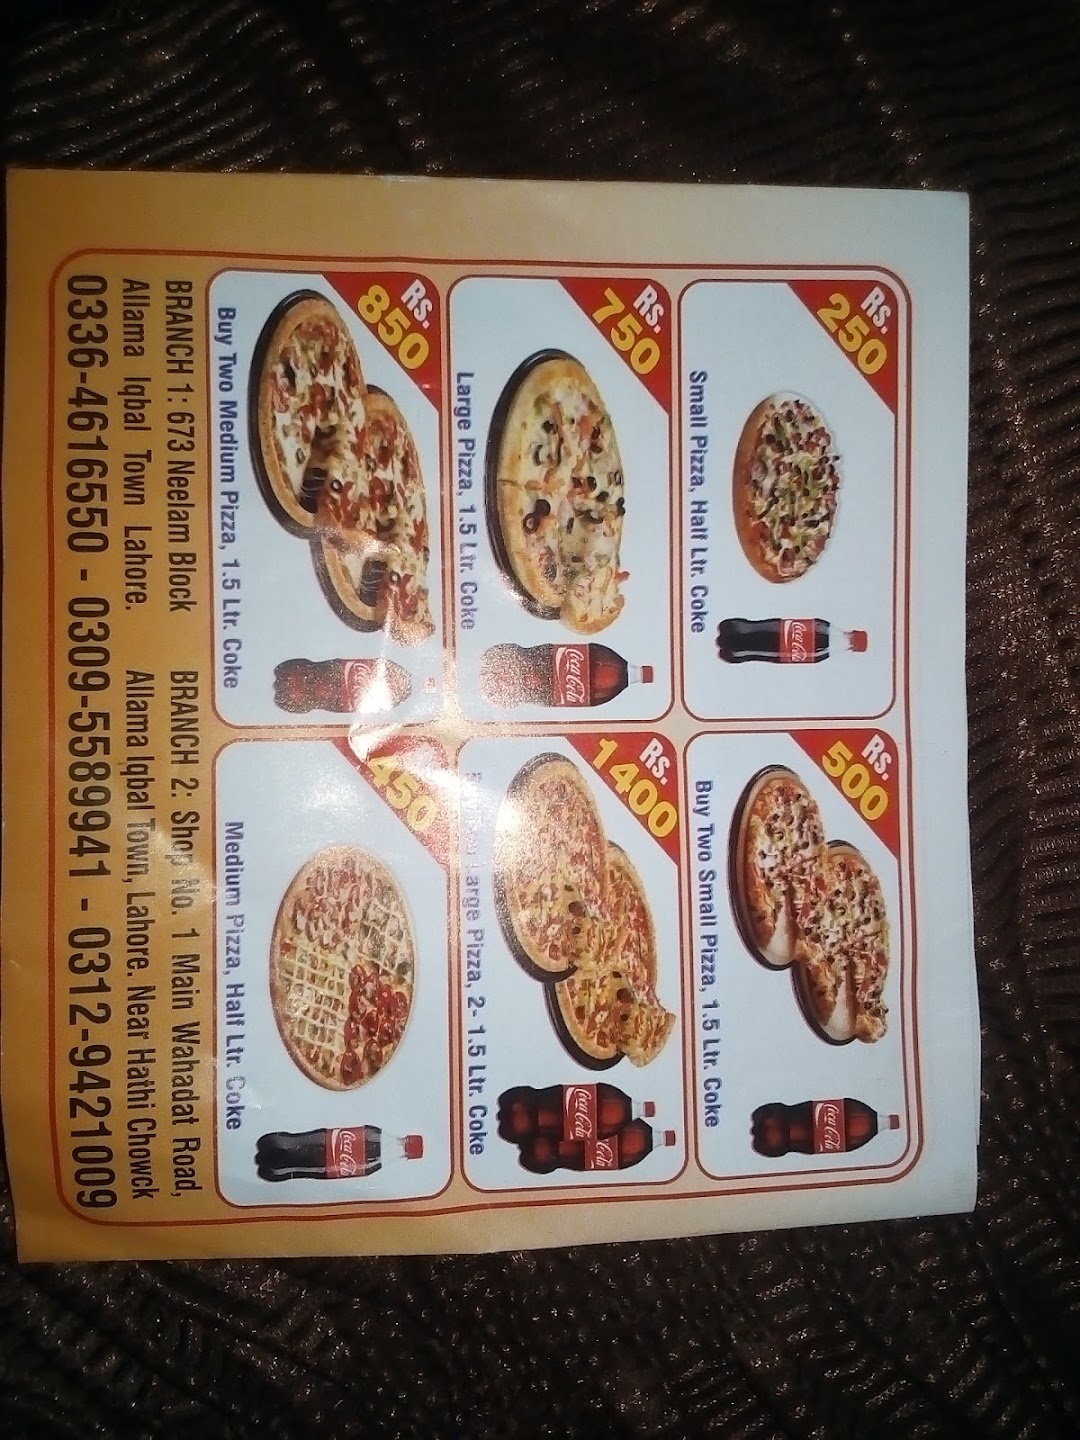 4U Fast Food & Pizza